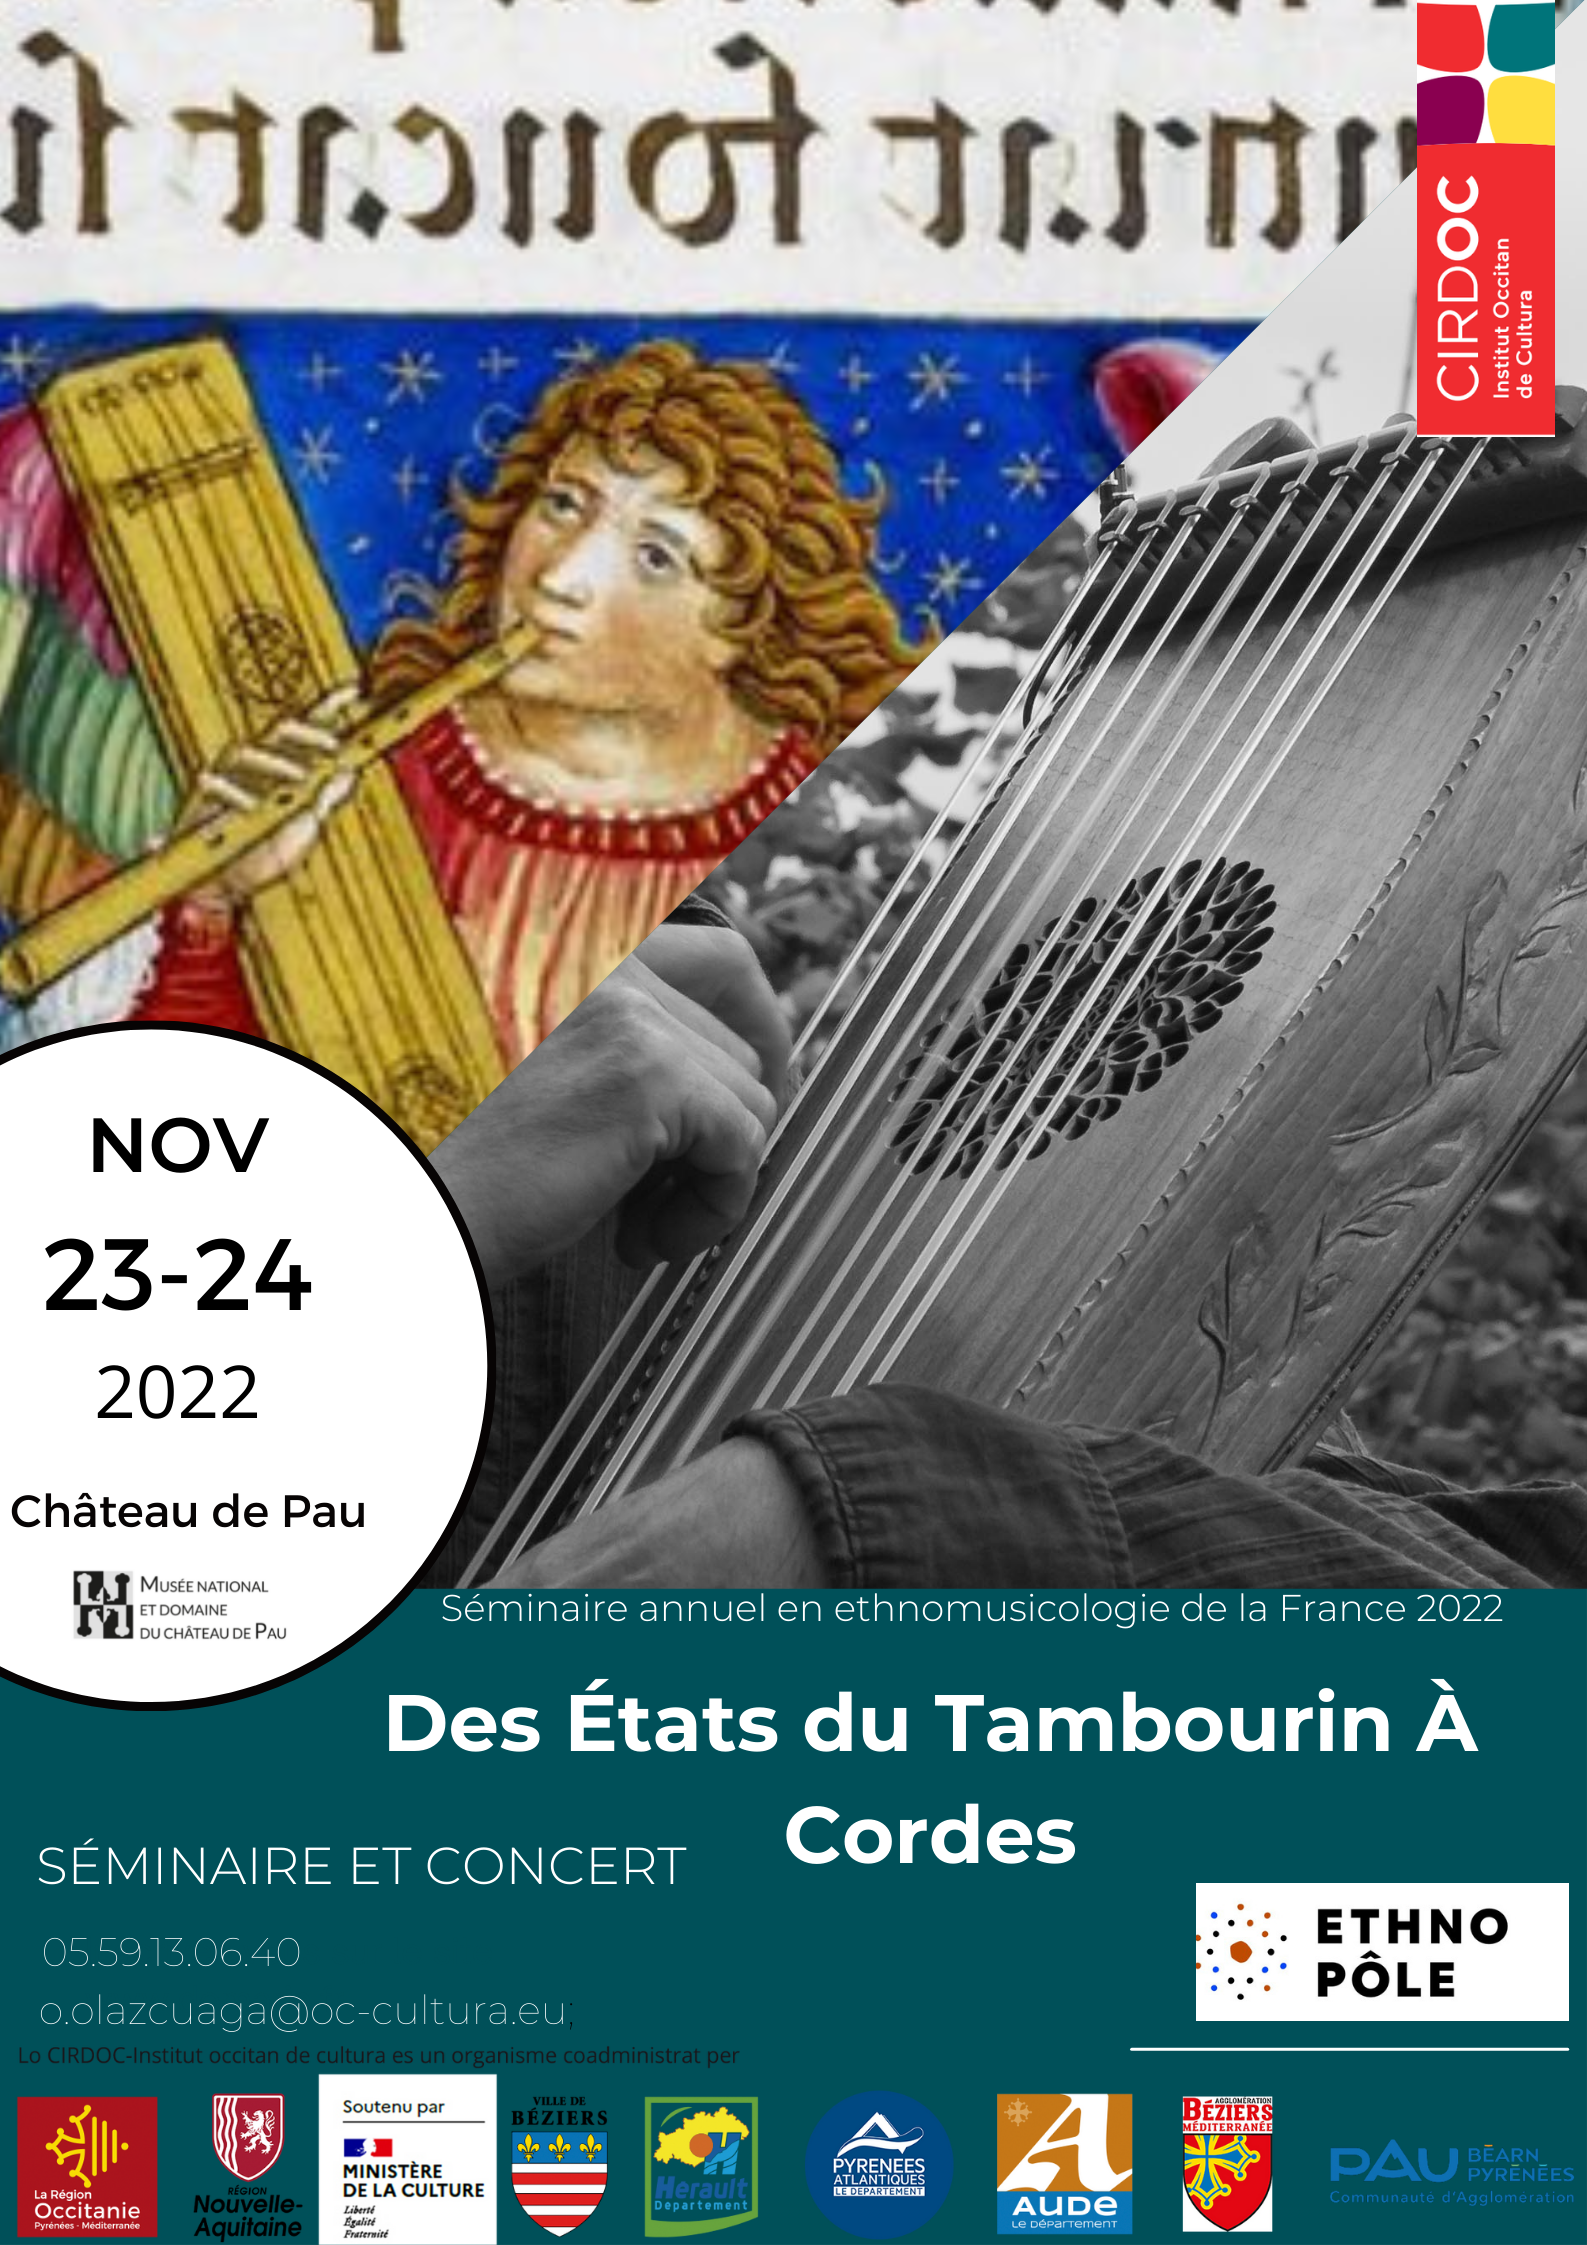 Affiche_Seminaire_concert_Des_etats_des_tambourins_chateau_Pau_2022